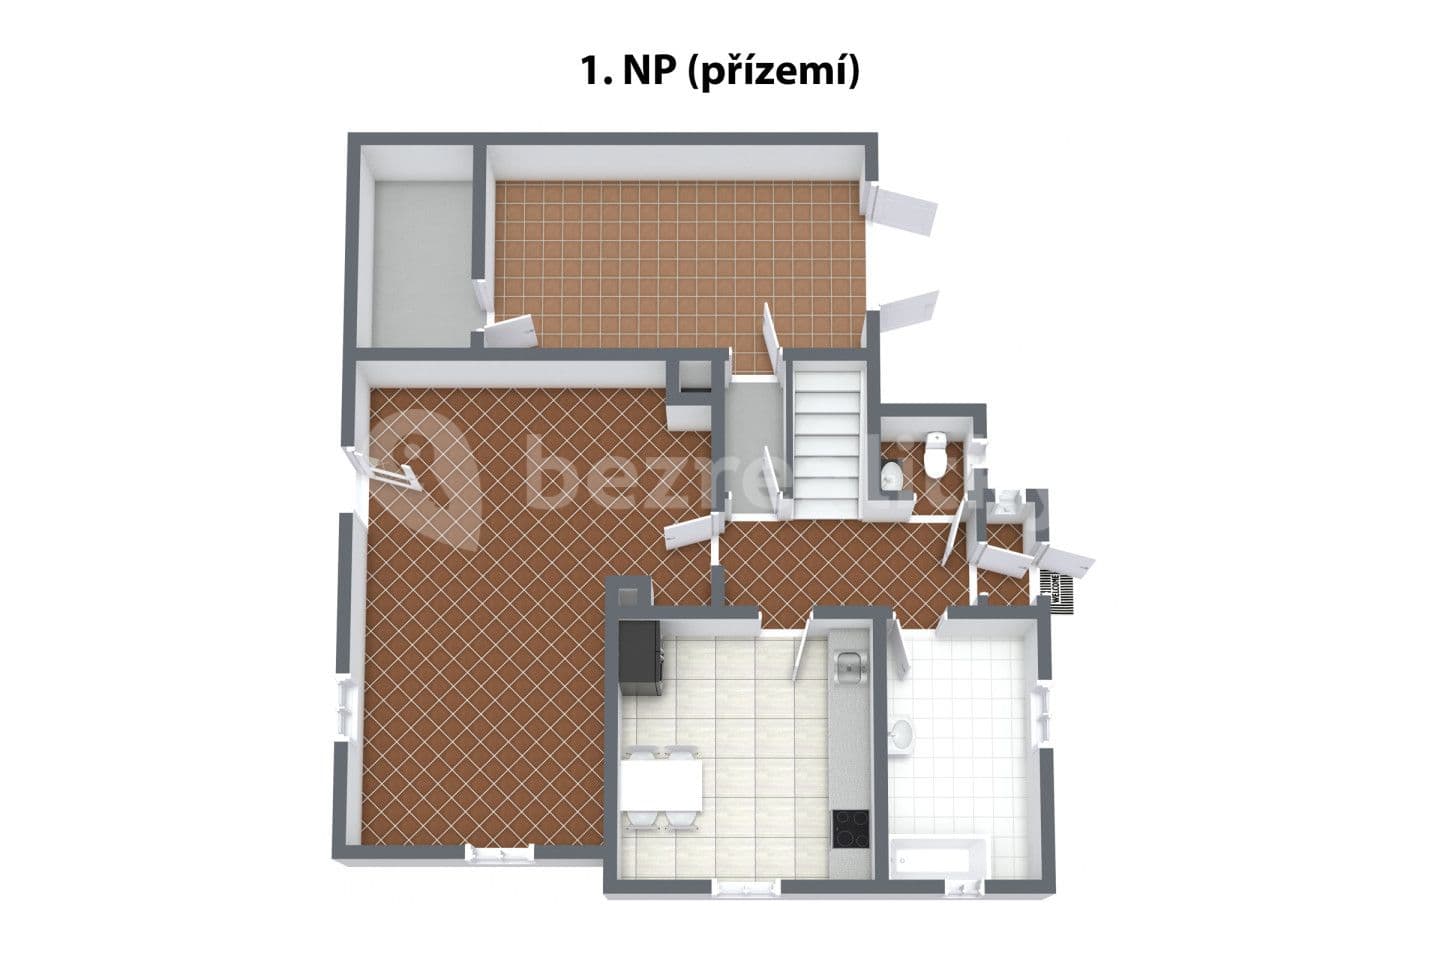 house for sale, 222 m², Kolová, Karlovarský Region